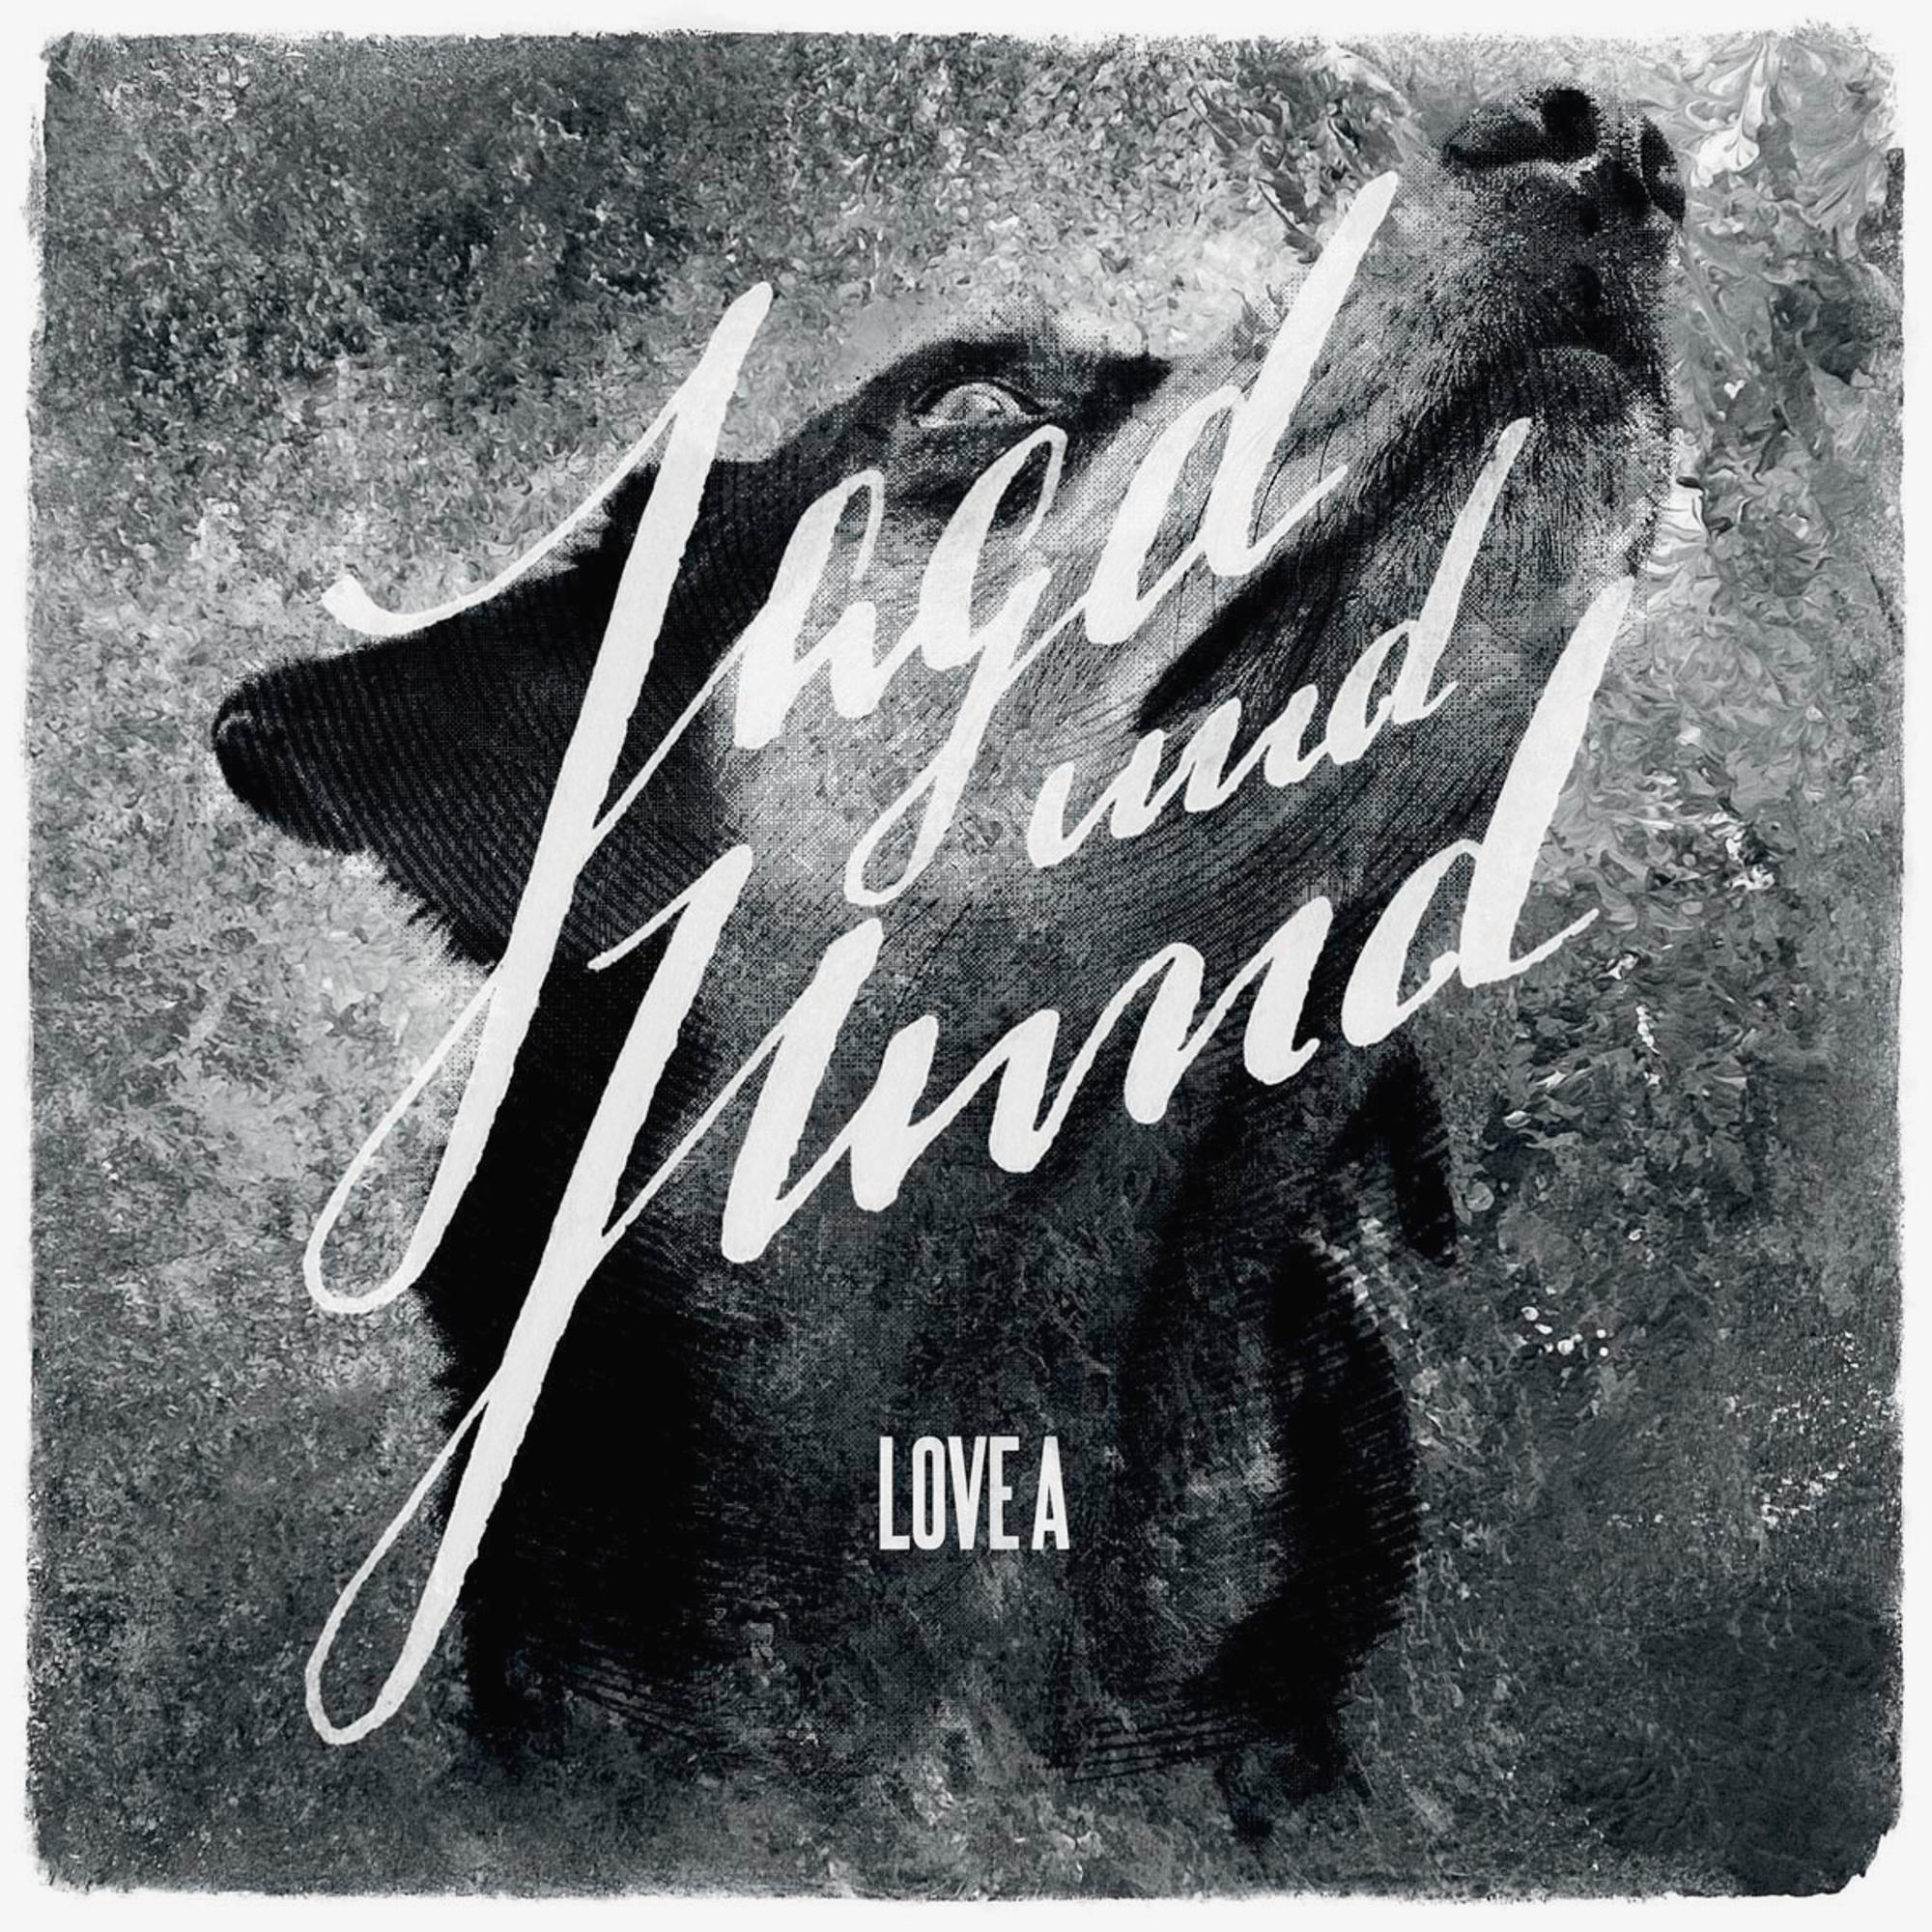 Love A Jagd Und - (CD) - Hund